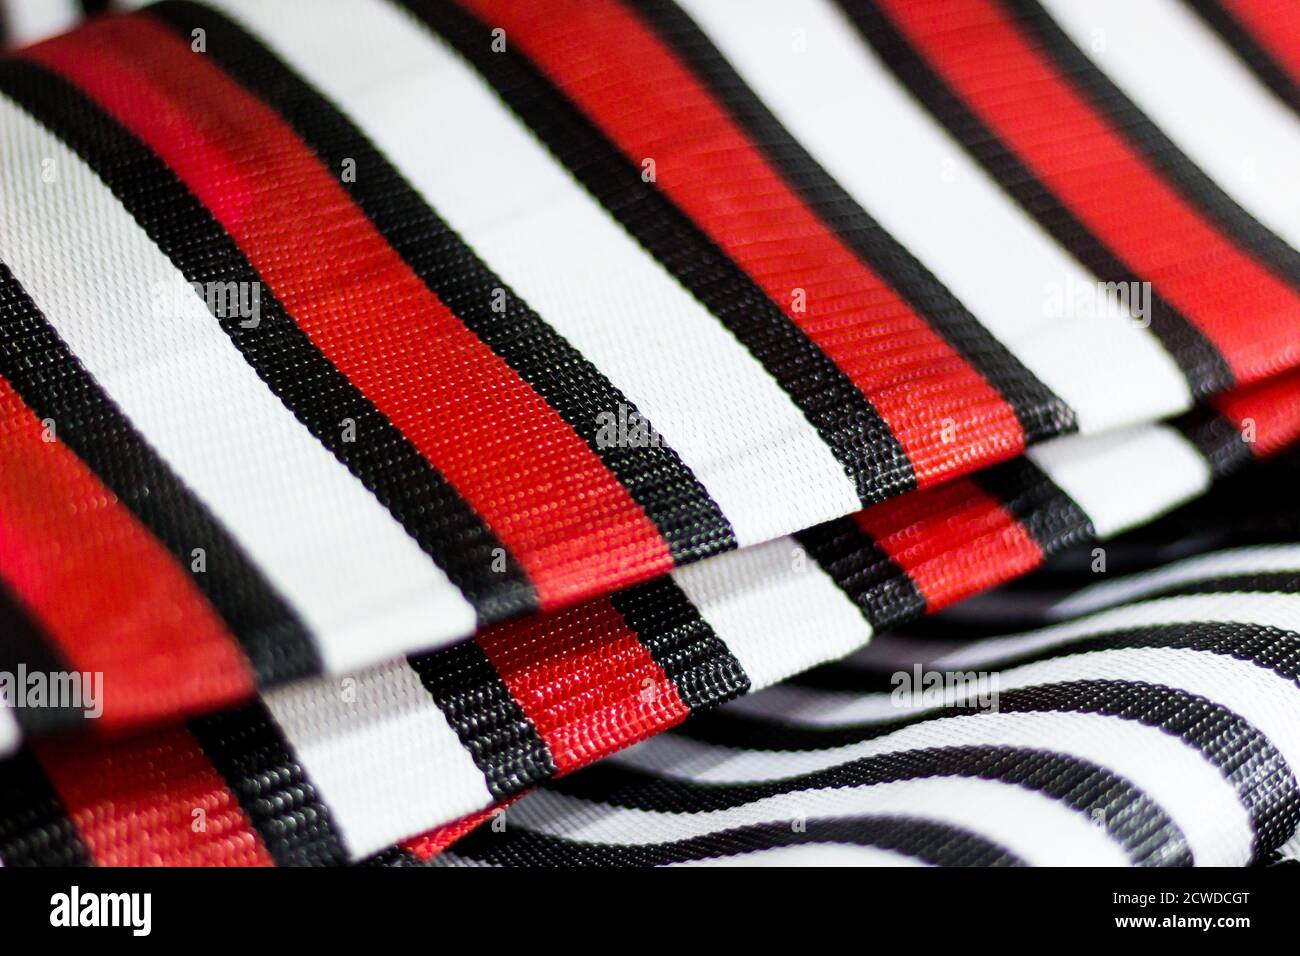 Dettaglio dei sacchetti di nylon con rosso e nero a strisce. Saara, Rio de Janeiro, Brasile. 2019 Foto Stock